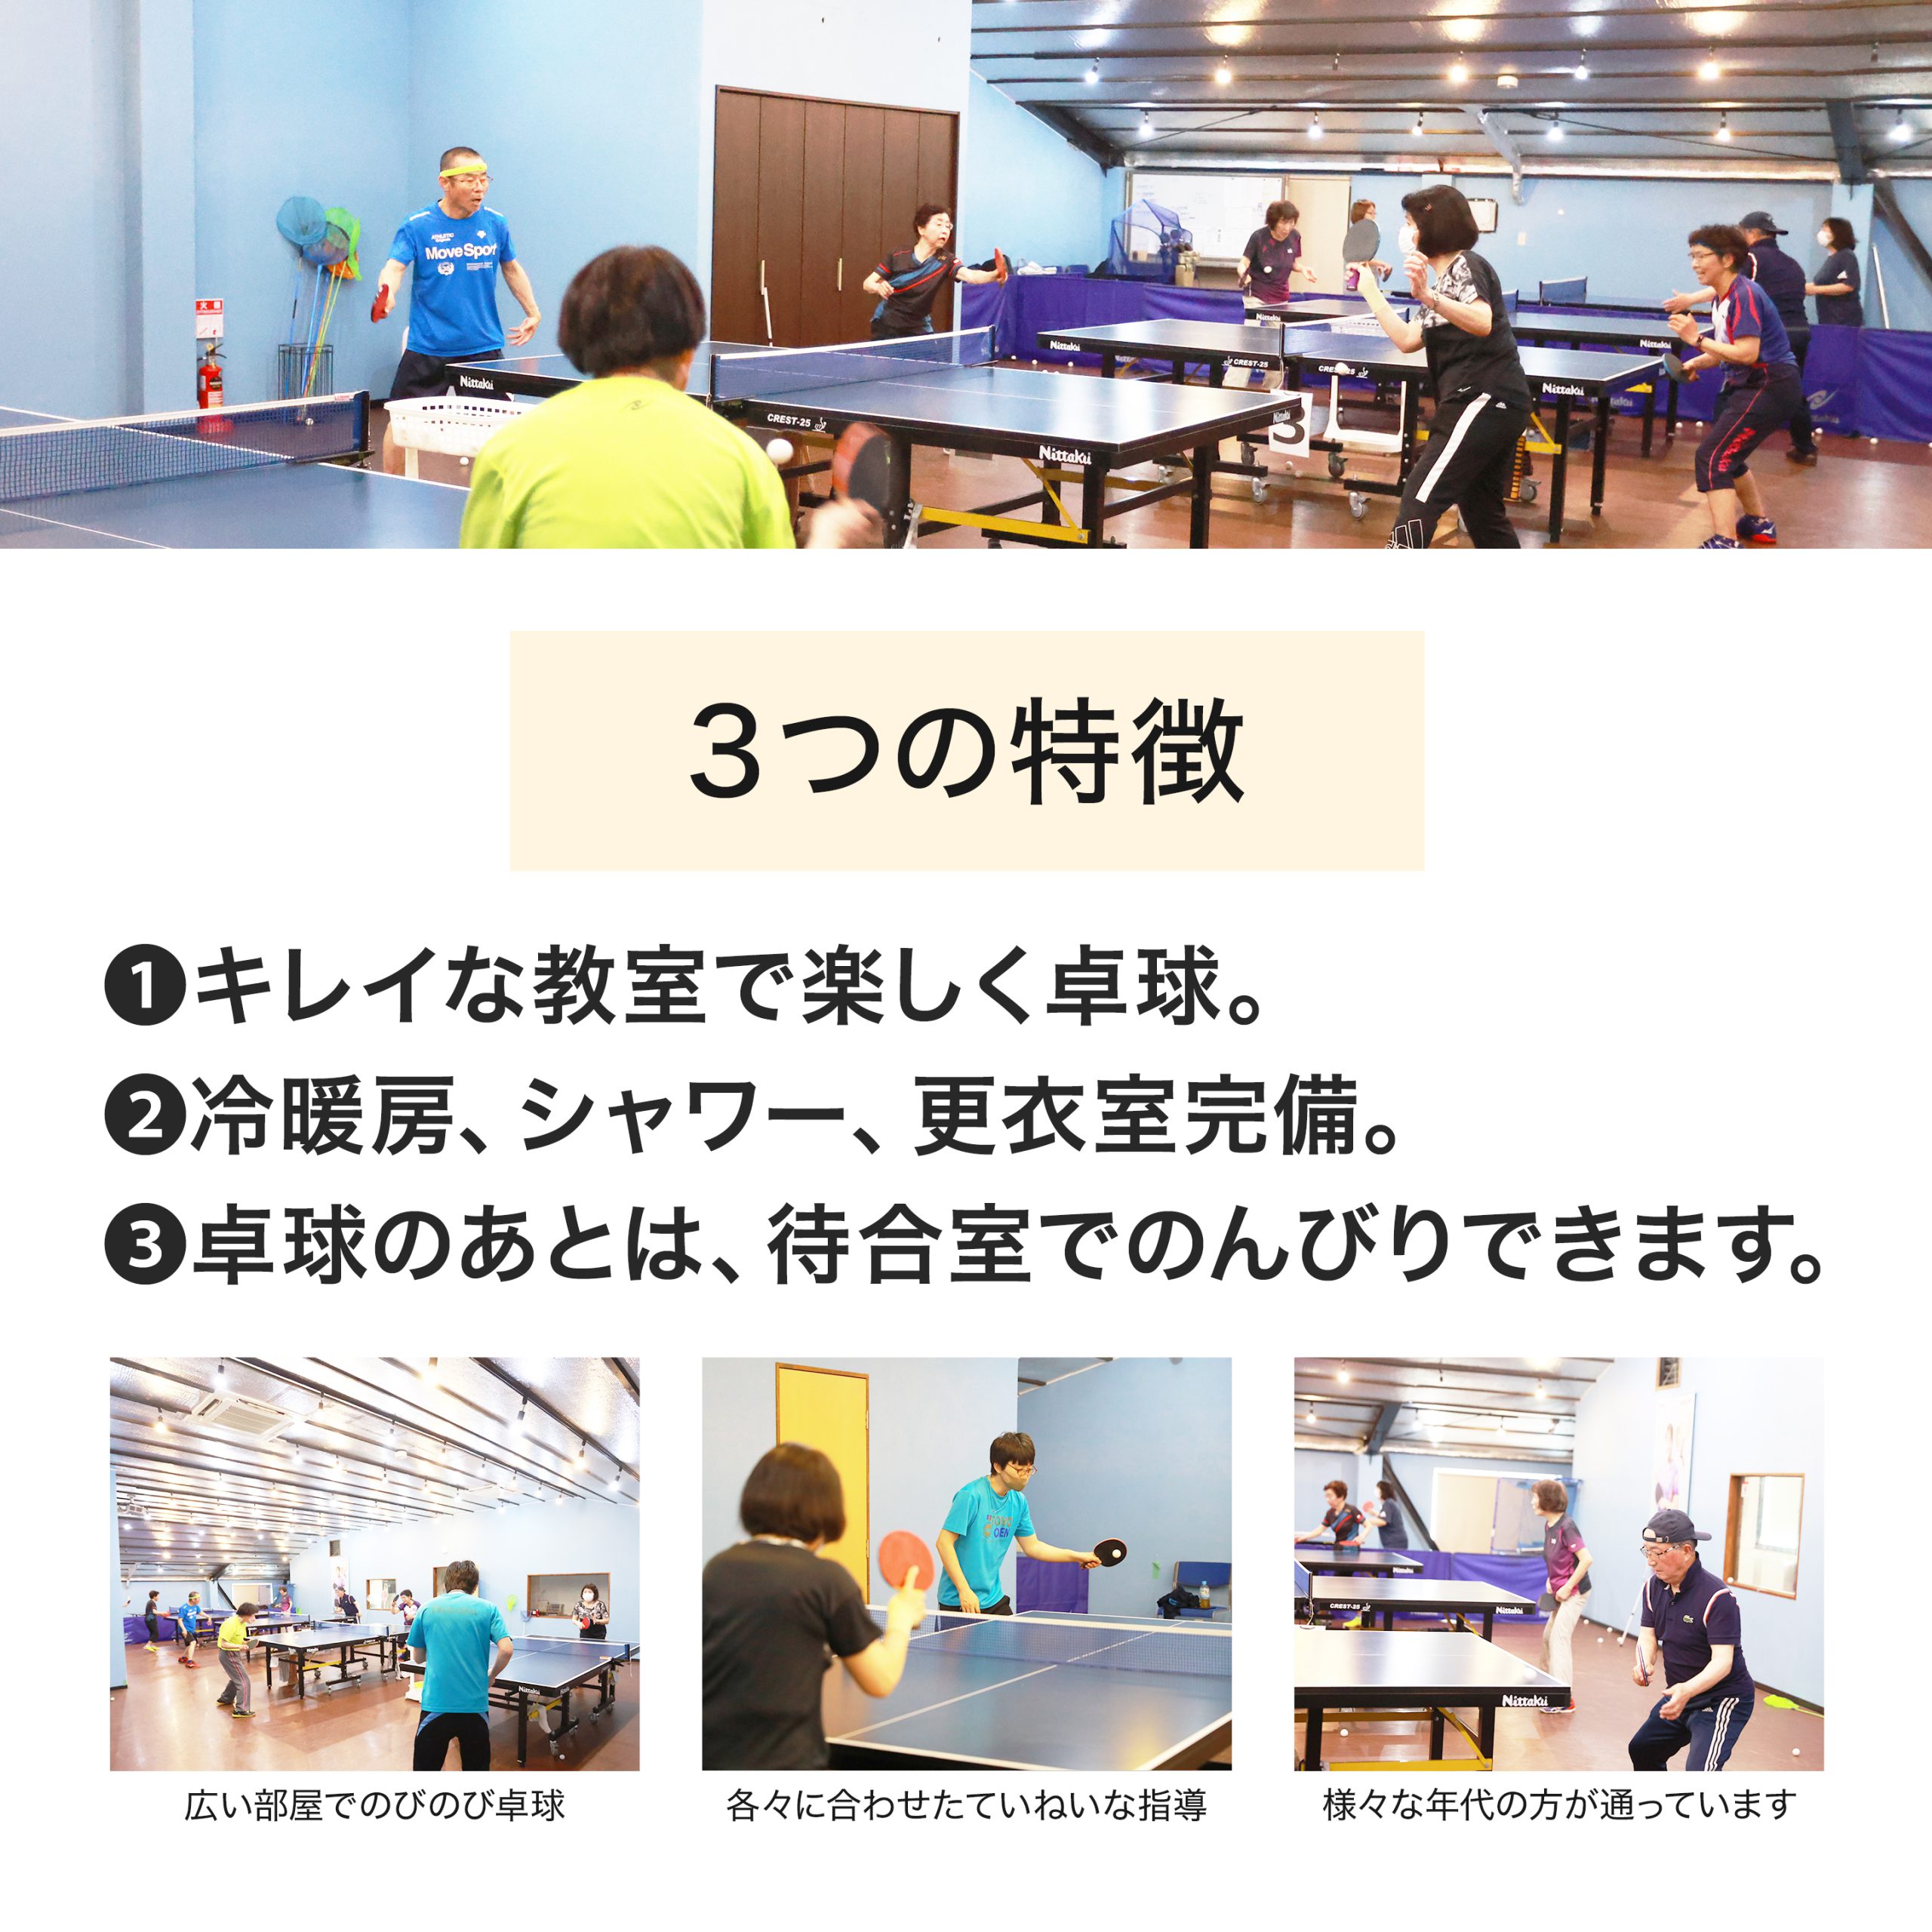 須磨の卓球教室 60歳から始める卓球教室 無料体験会